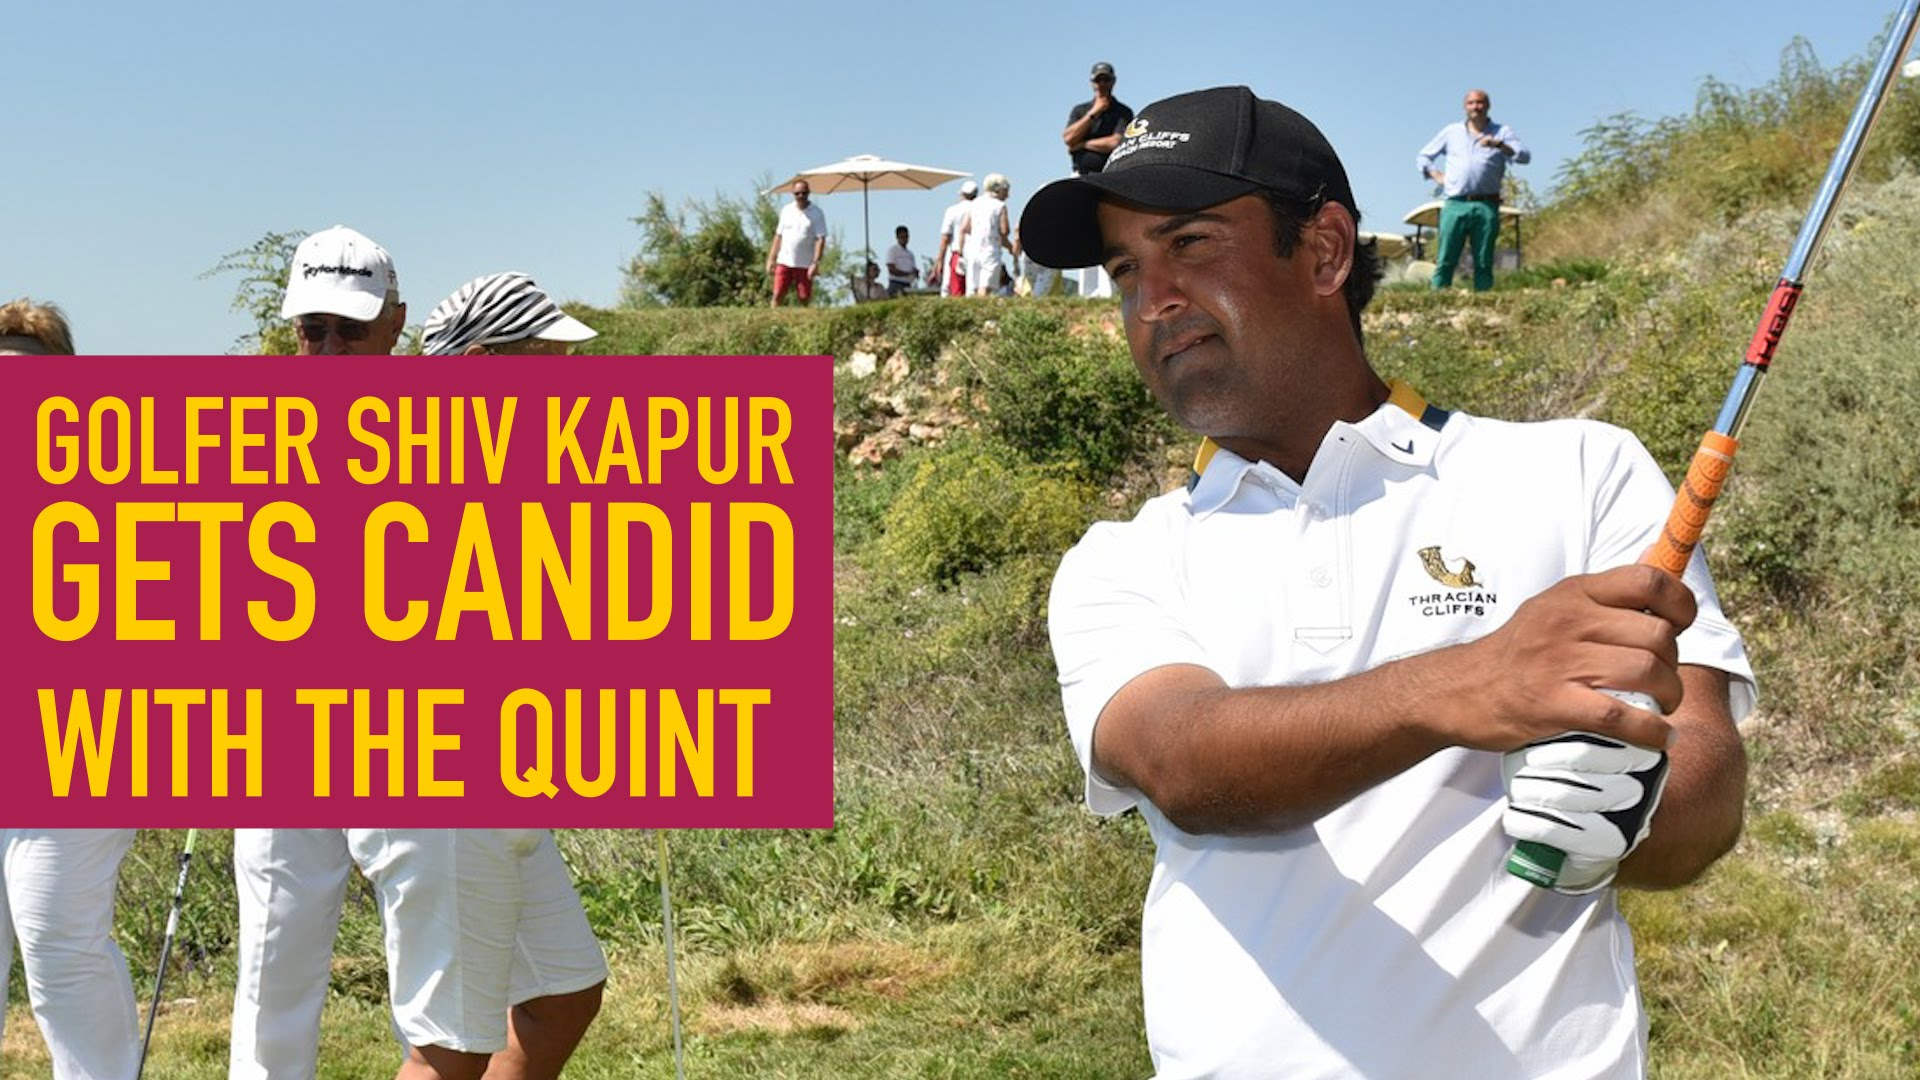 Golfer Shiv Kapur